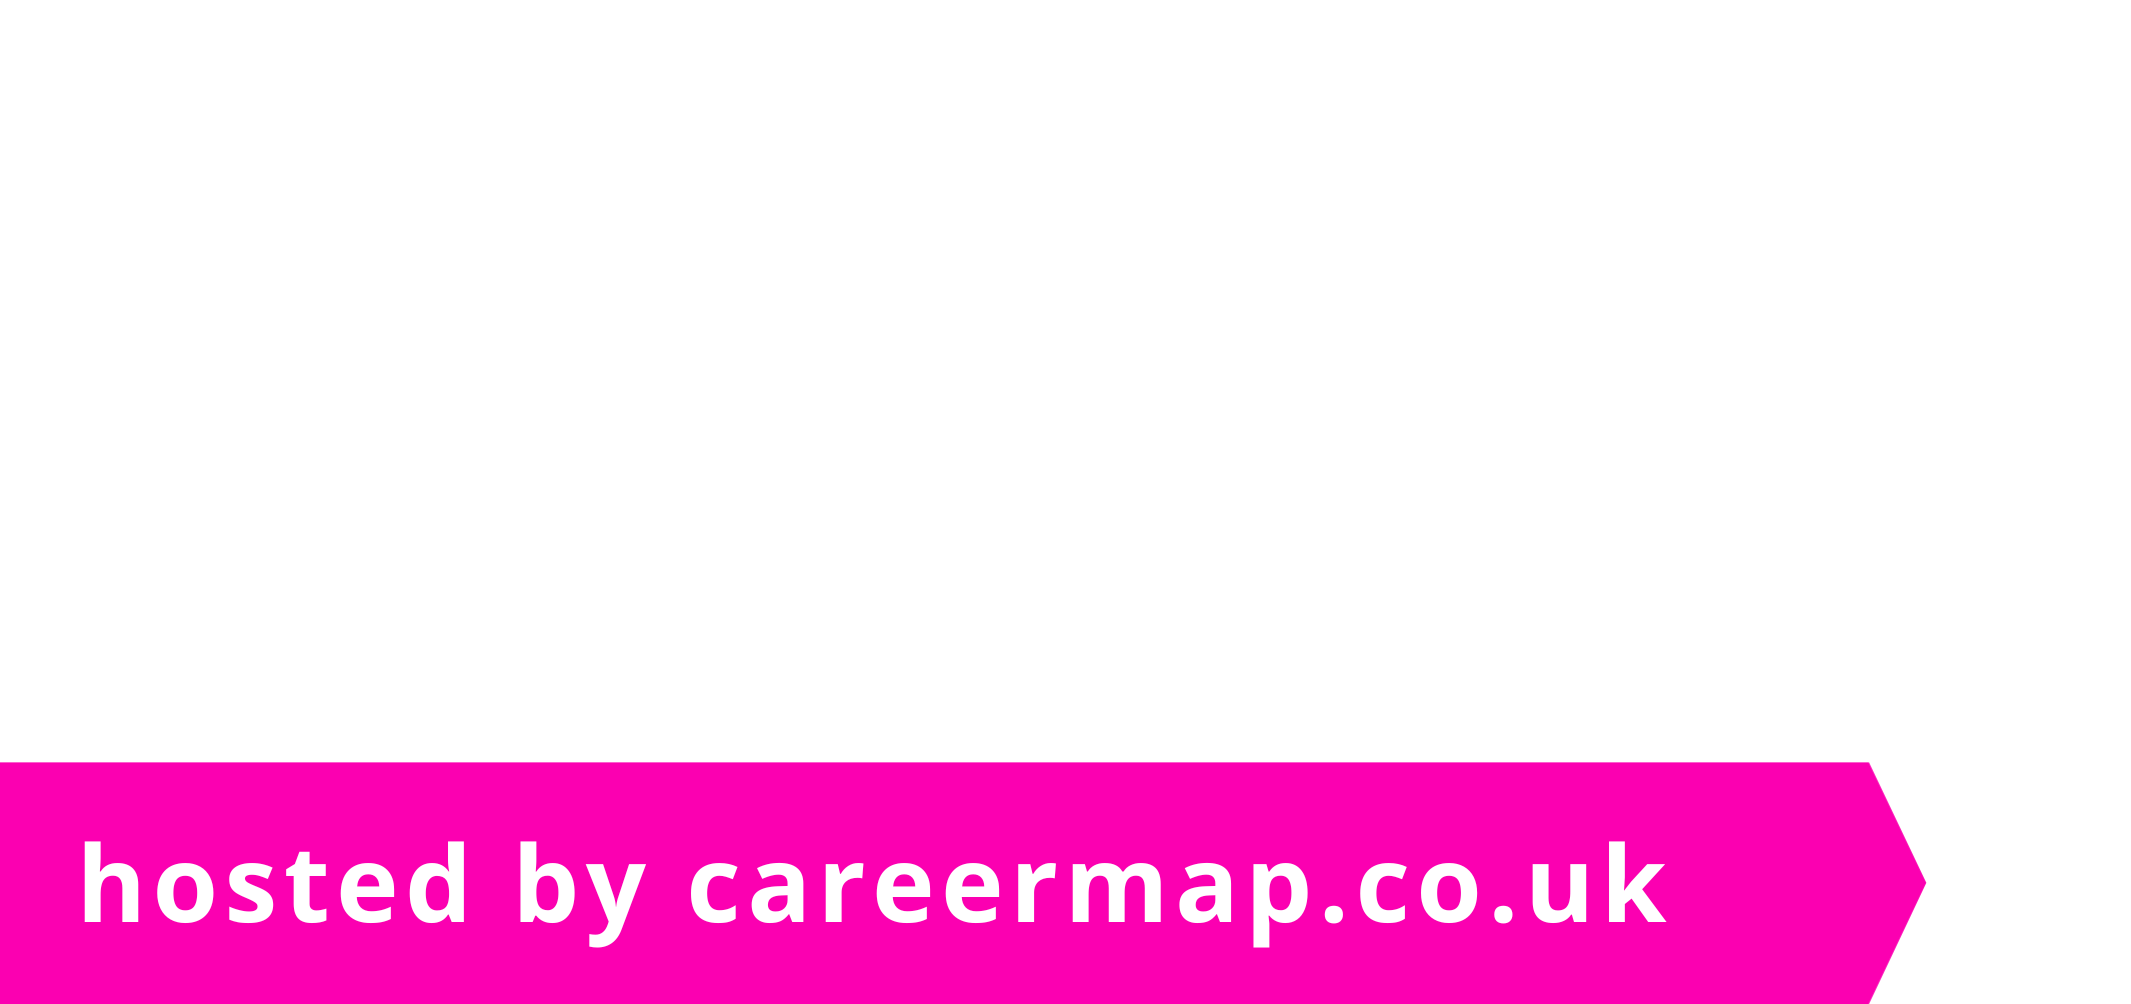 National Work Experience Week